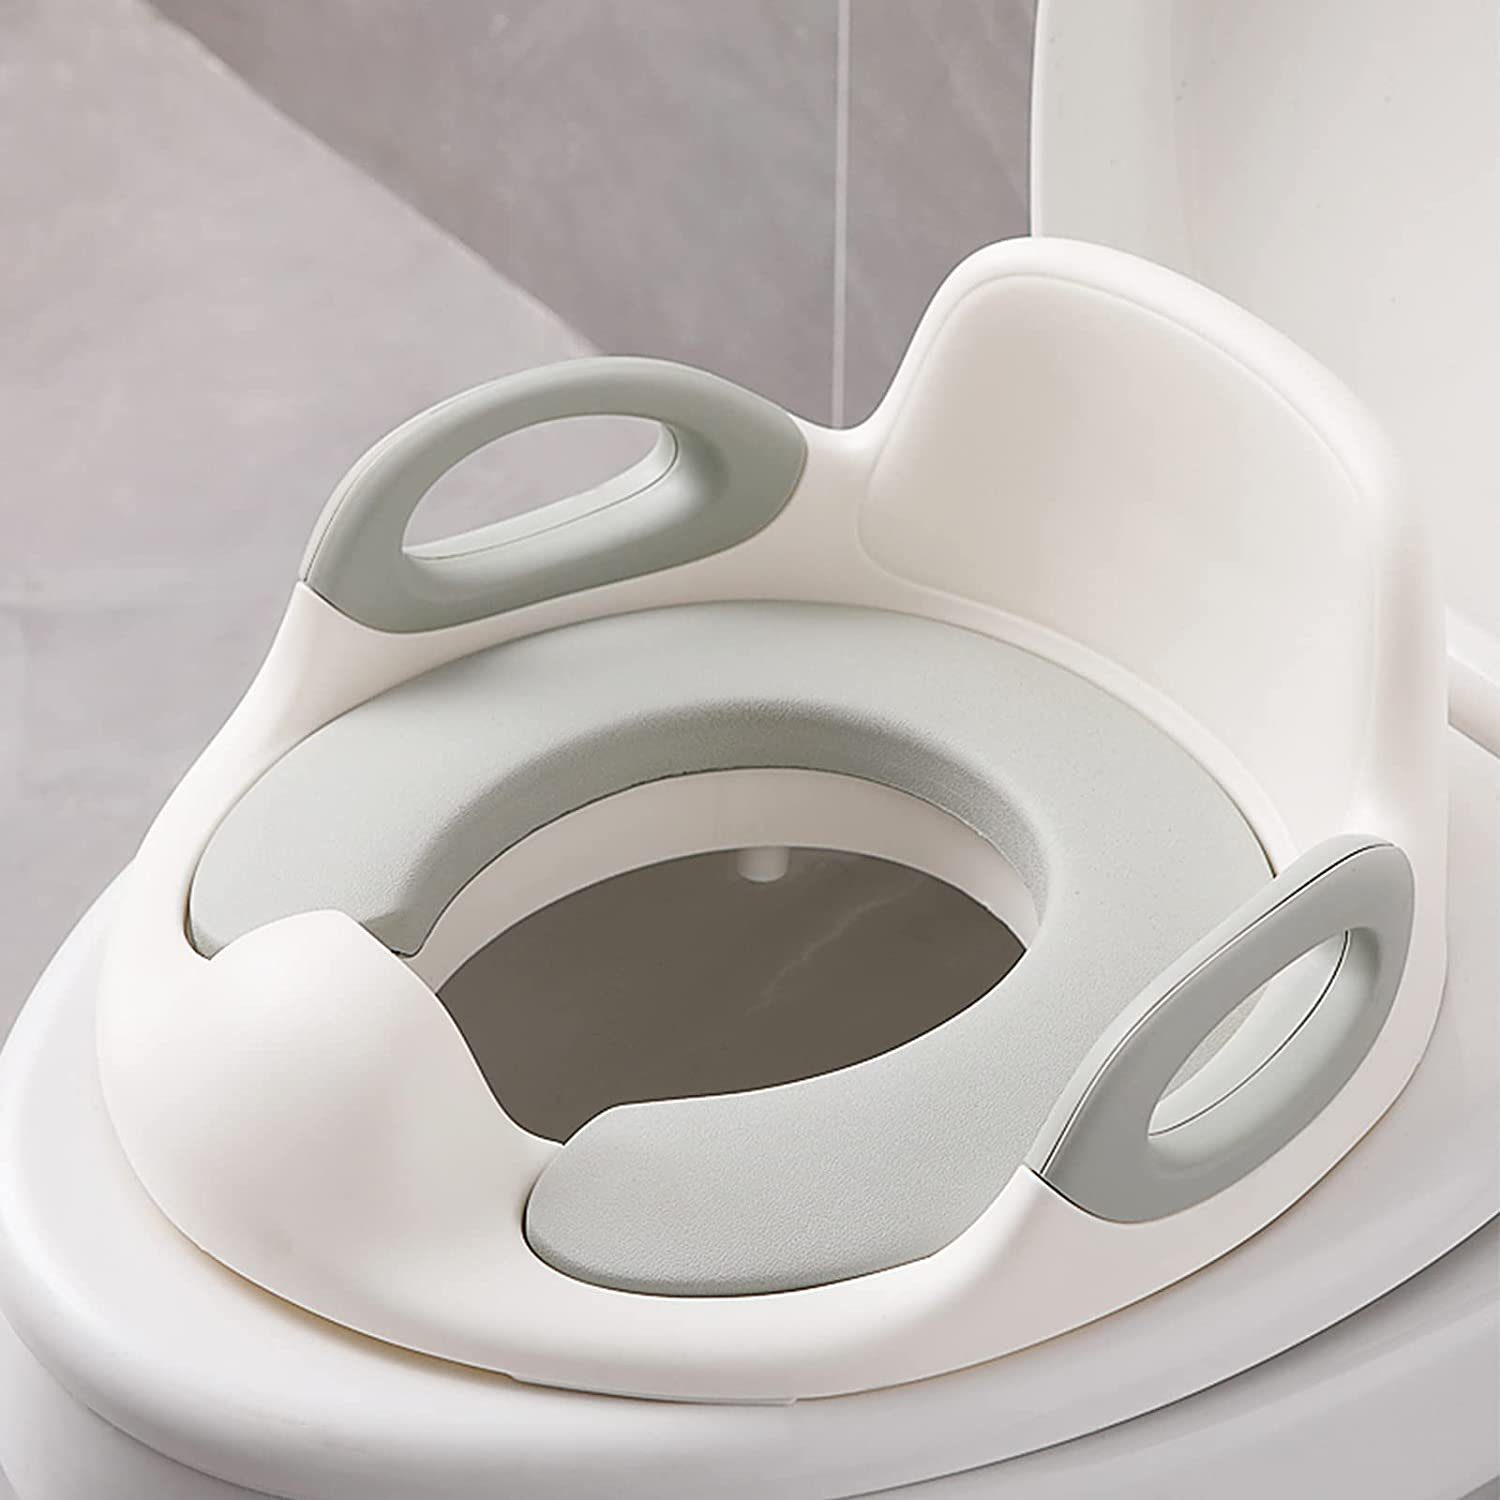 AUFUN Baby-Toilettensitz Kinder WC Sitz kinder Toilettentrainer Töpfchen, 3 Farben